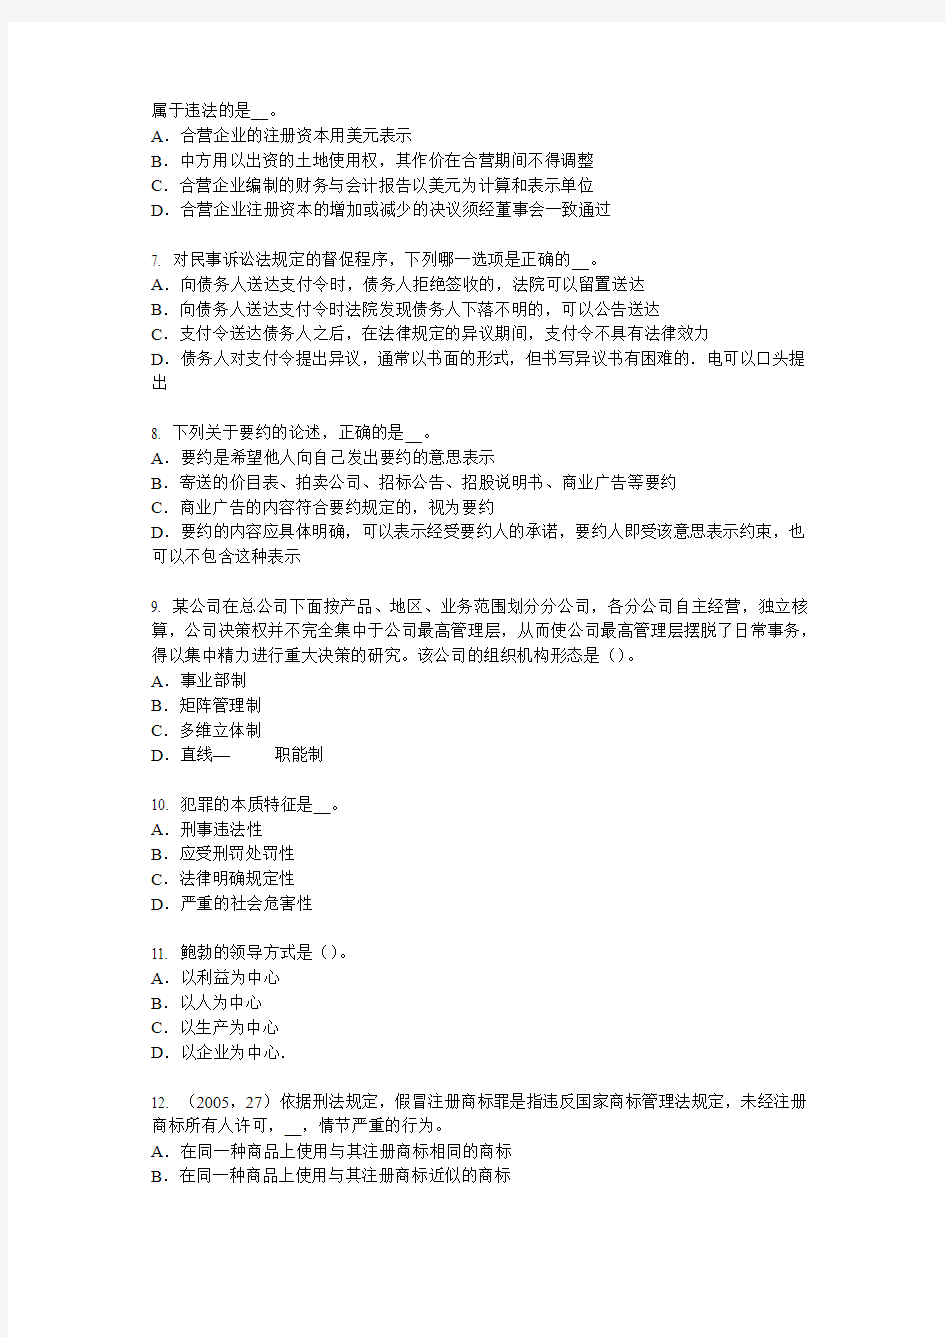 2015年下半年河北省综合法律知识：行政处罚的实施机关考试题